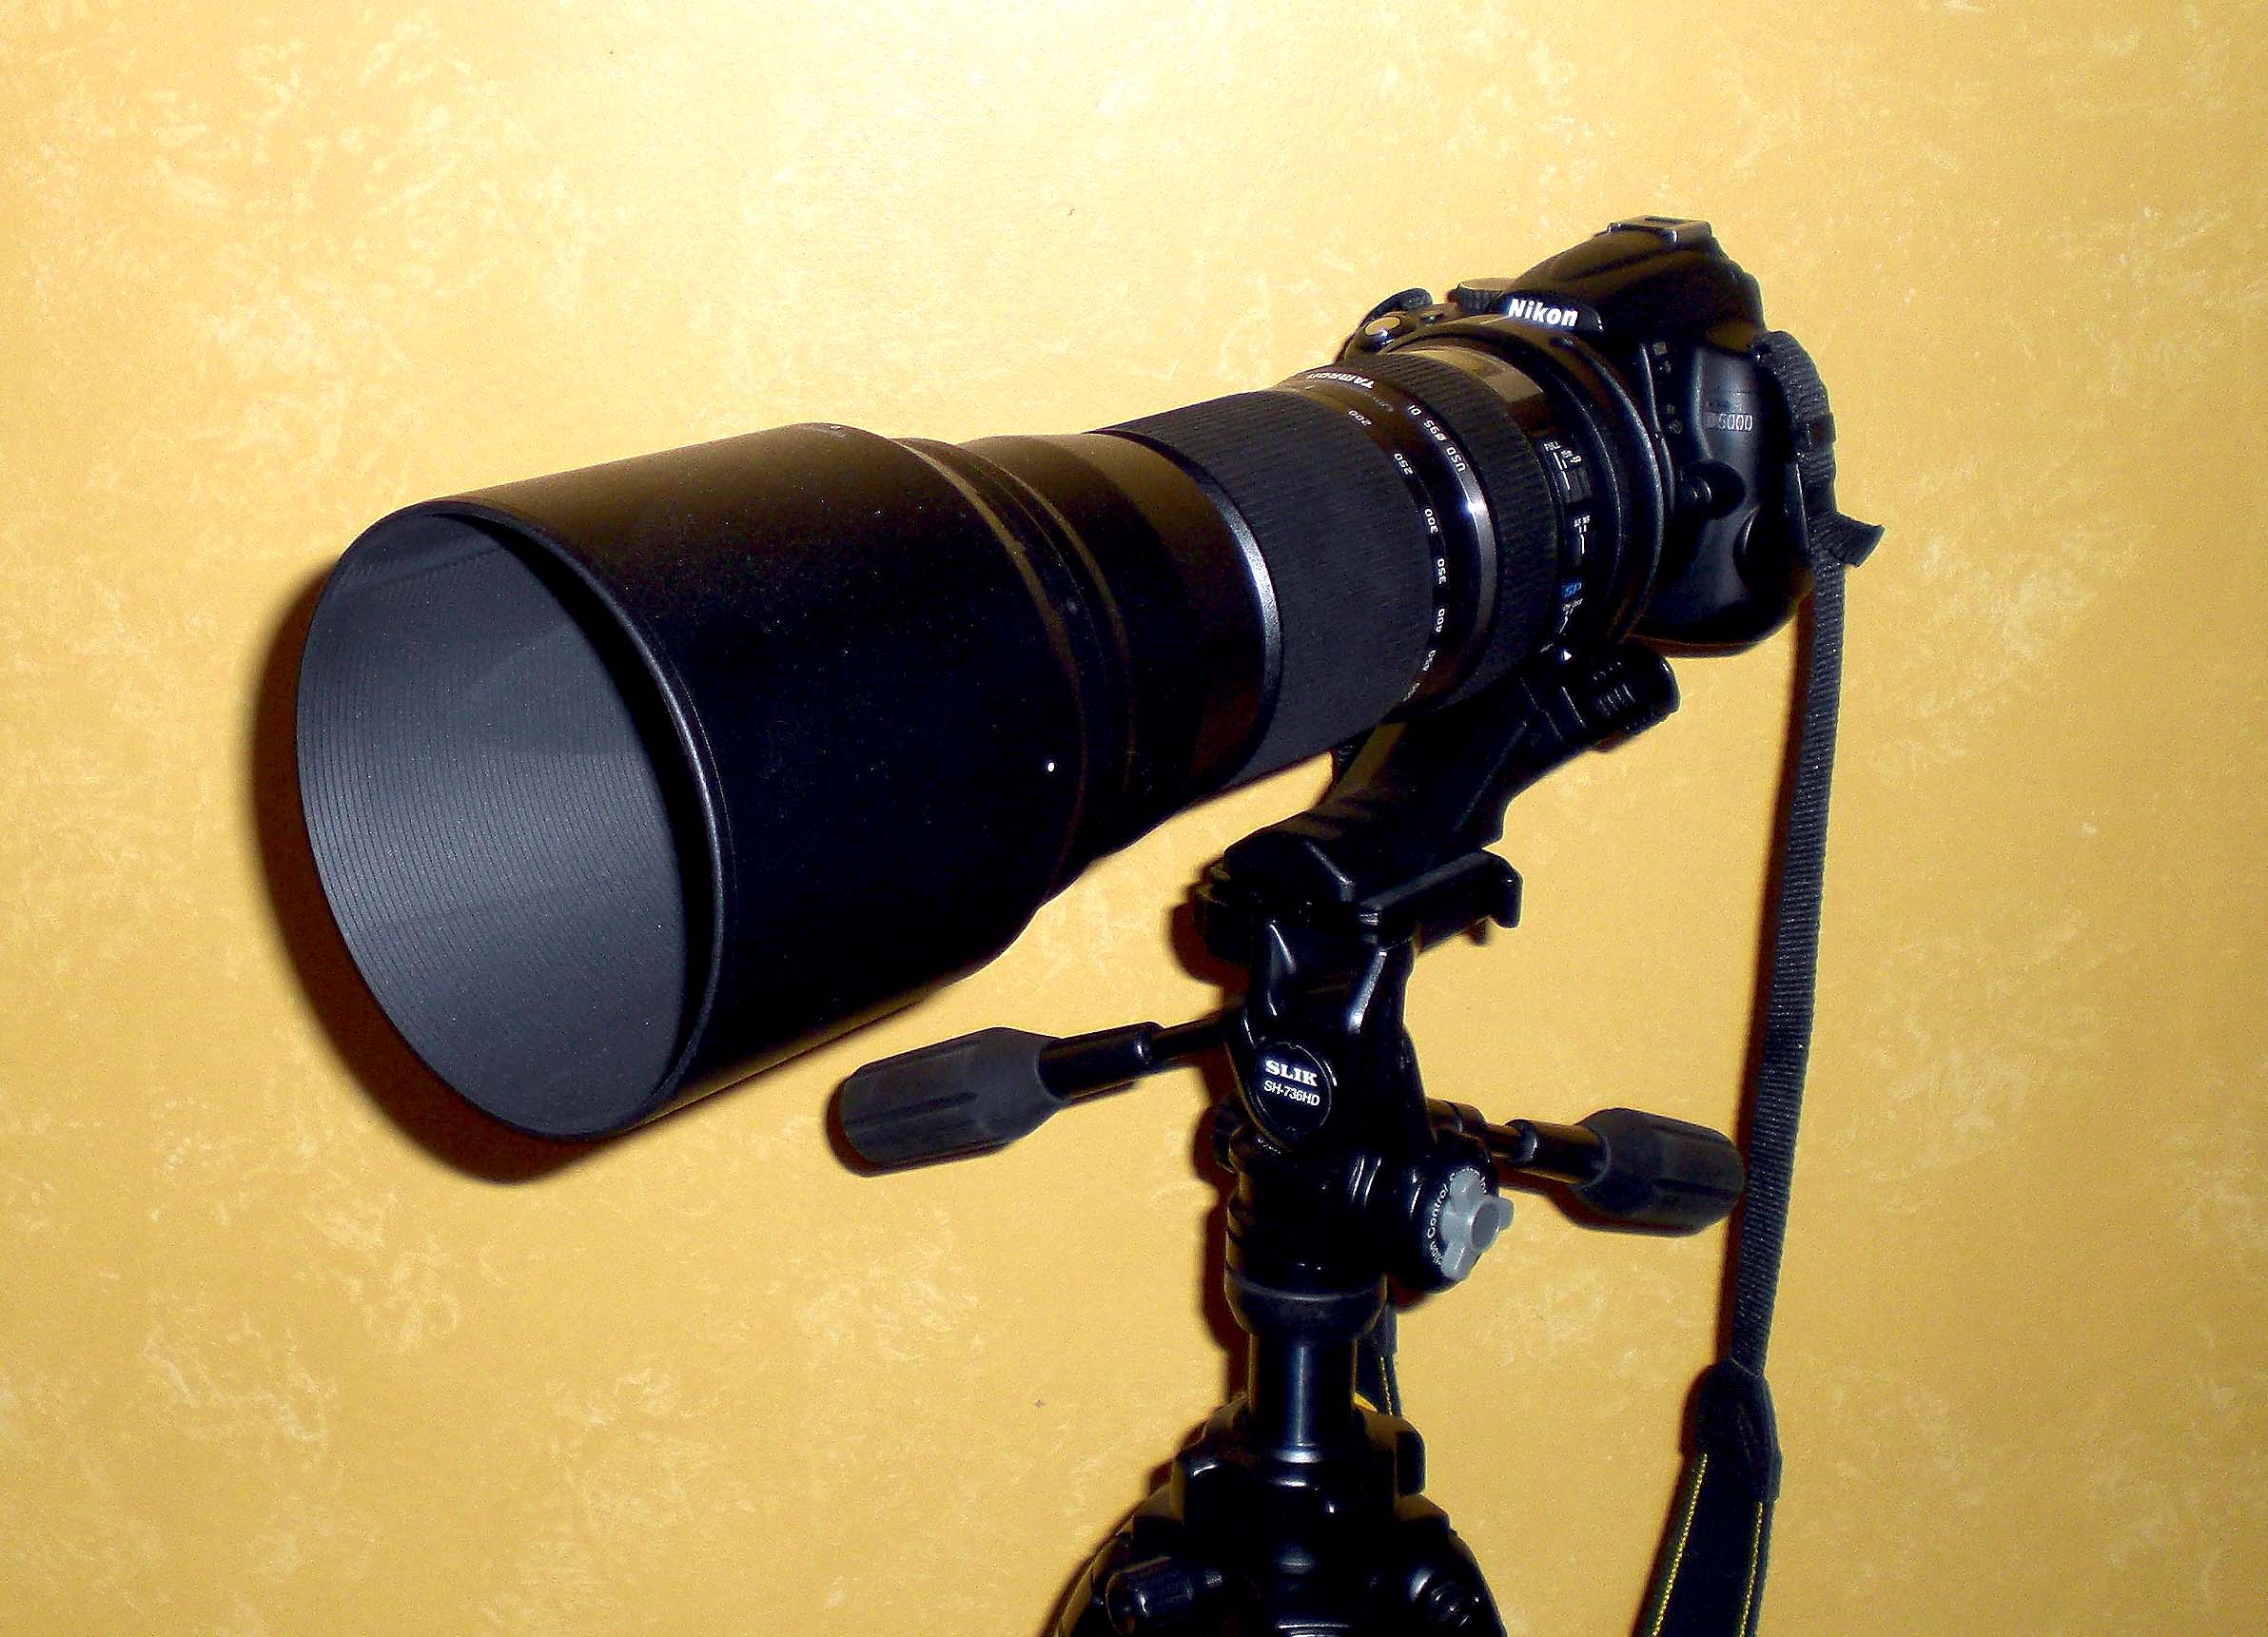 Tamron 150-600mm on the Nikon D5000